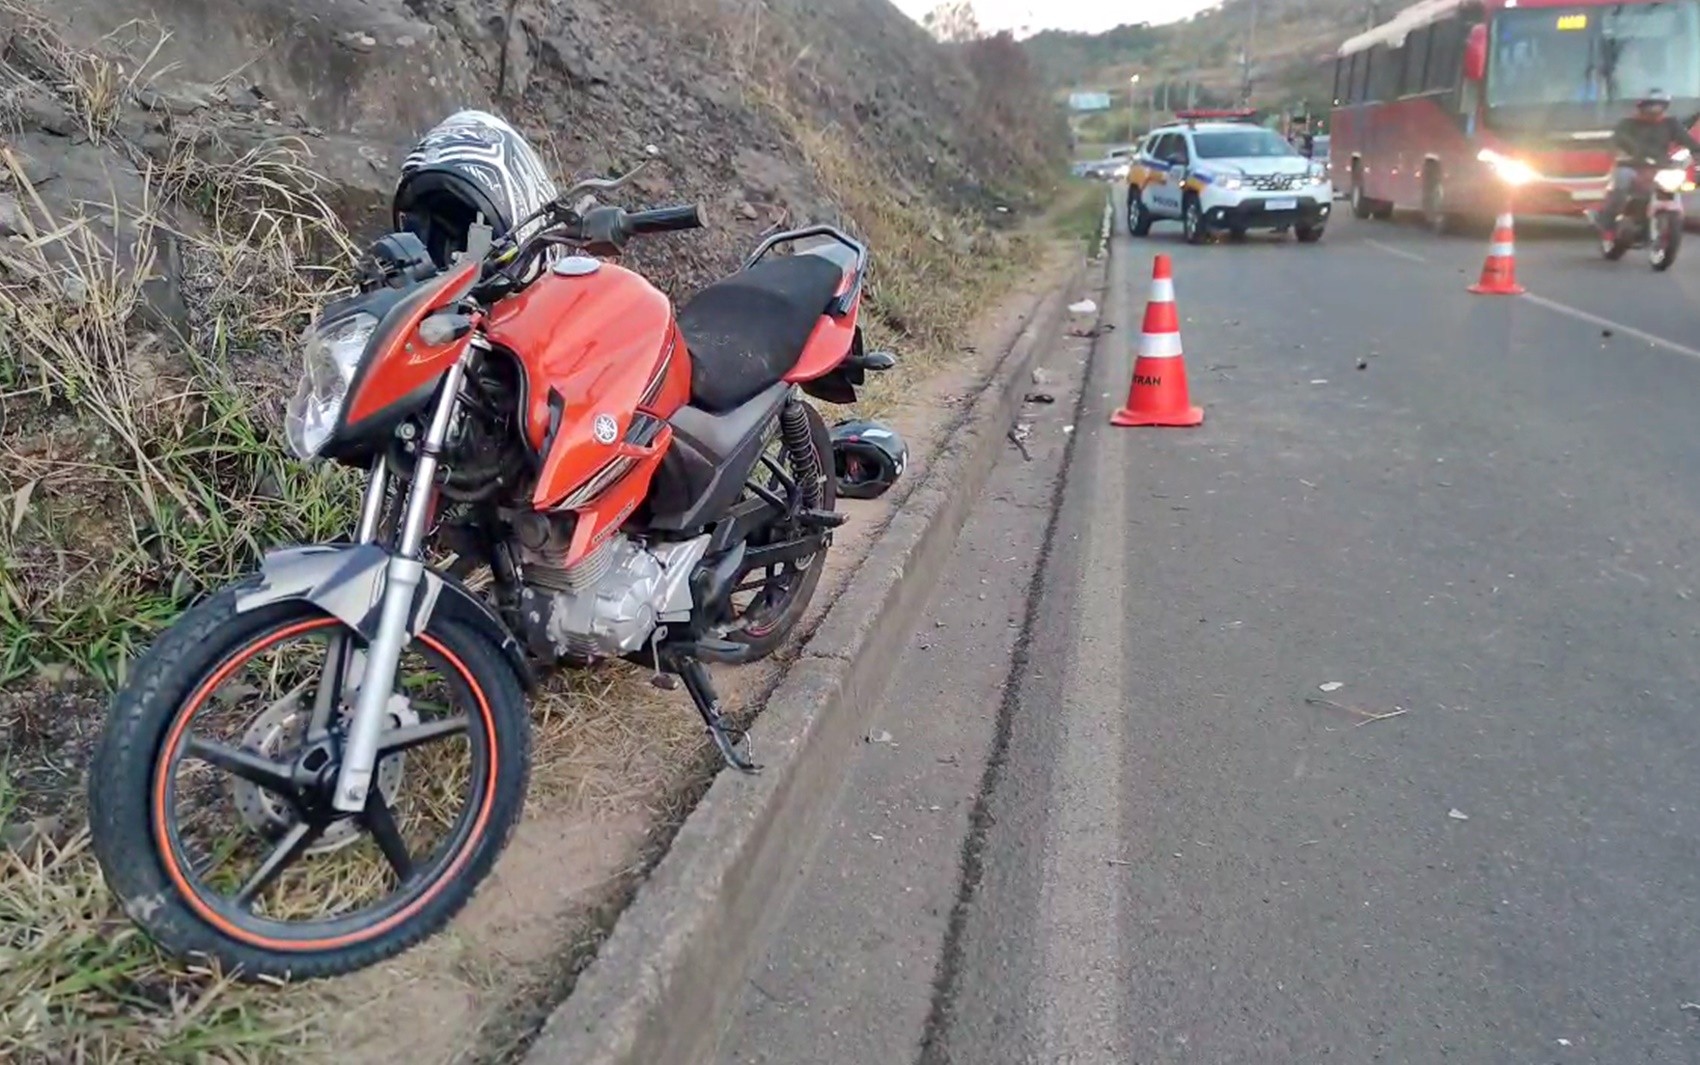 Motociclista morre após cair e bater rosto em guia de calçada em Poços de Caldas, MG